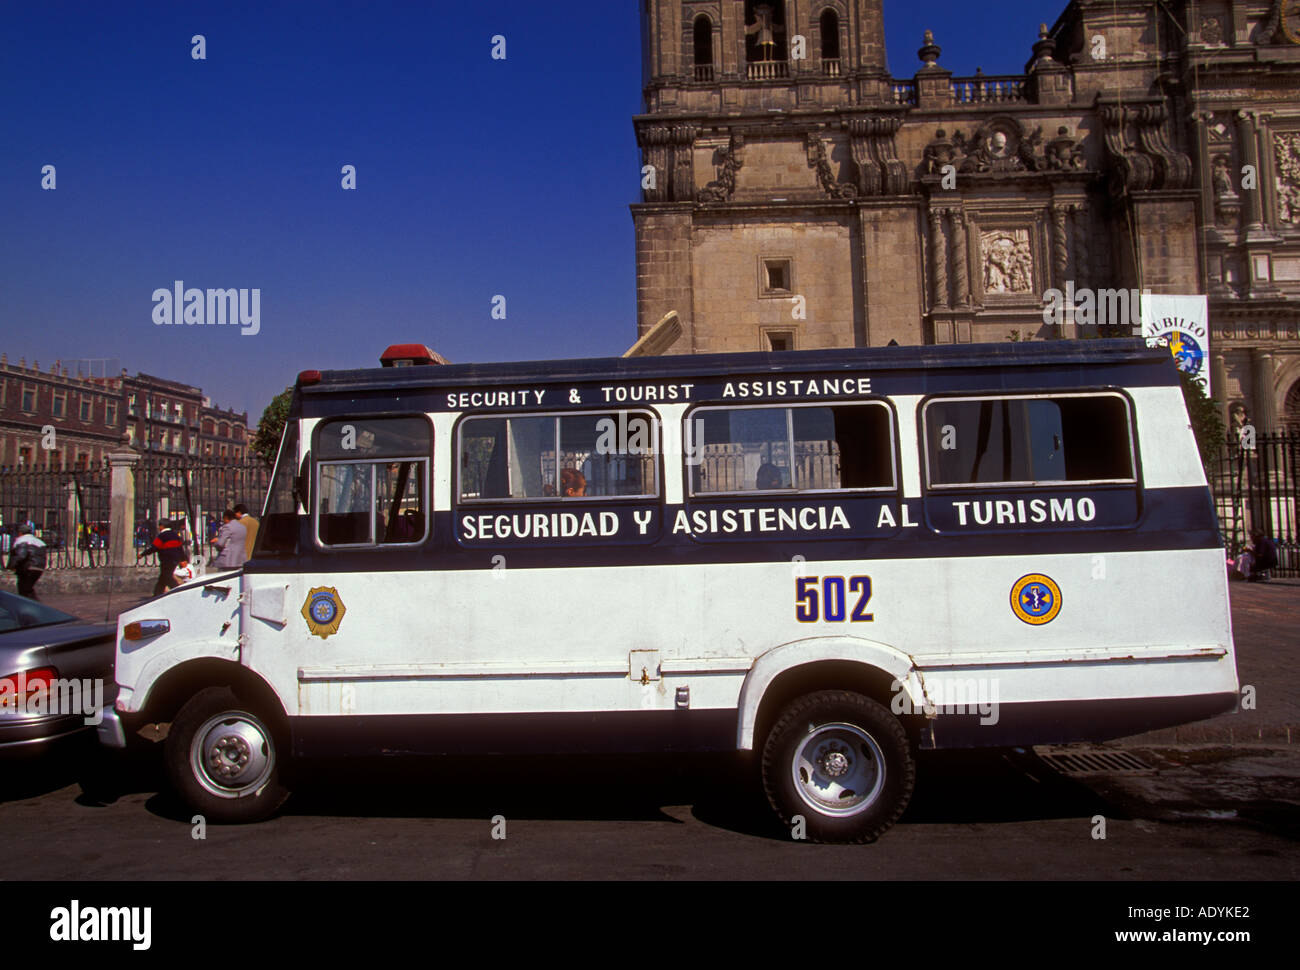 Polizei van, Sicherheit und touristische Unterstützung, Zocalo, Mexico City, Distrito Federal, Mexiko Stockfoto